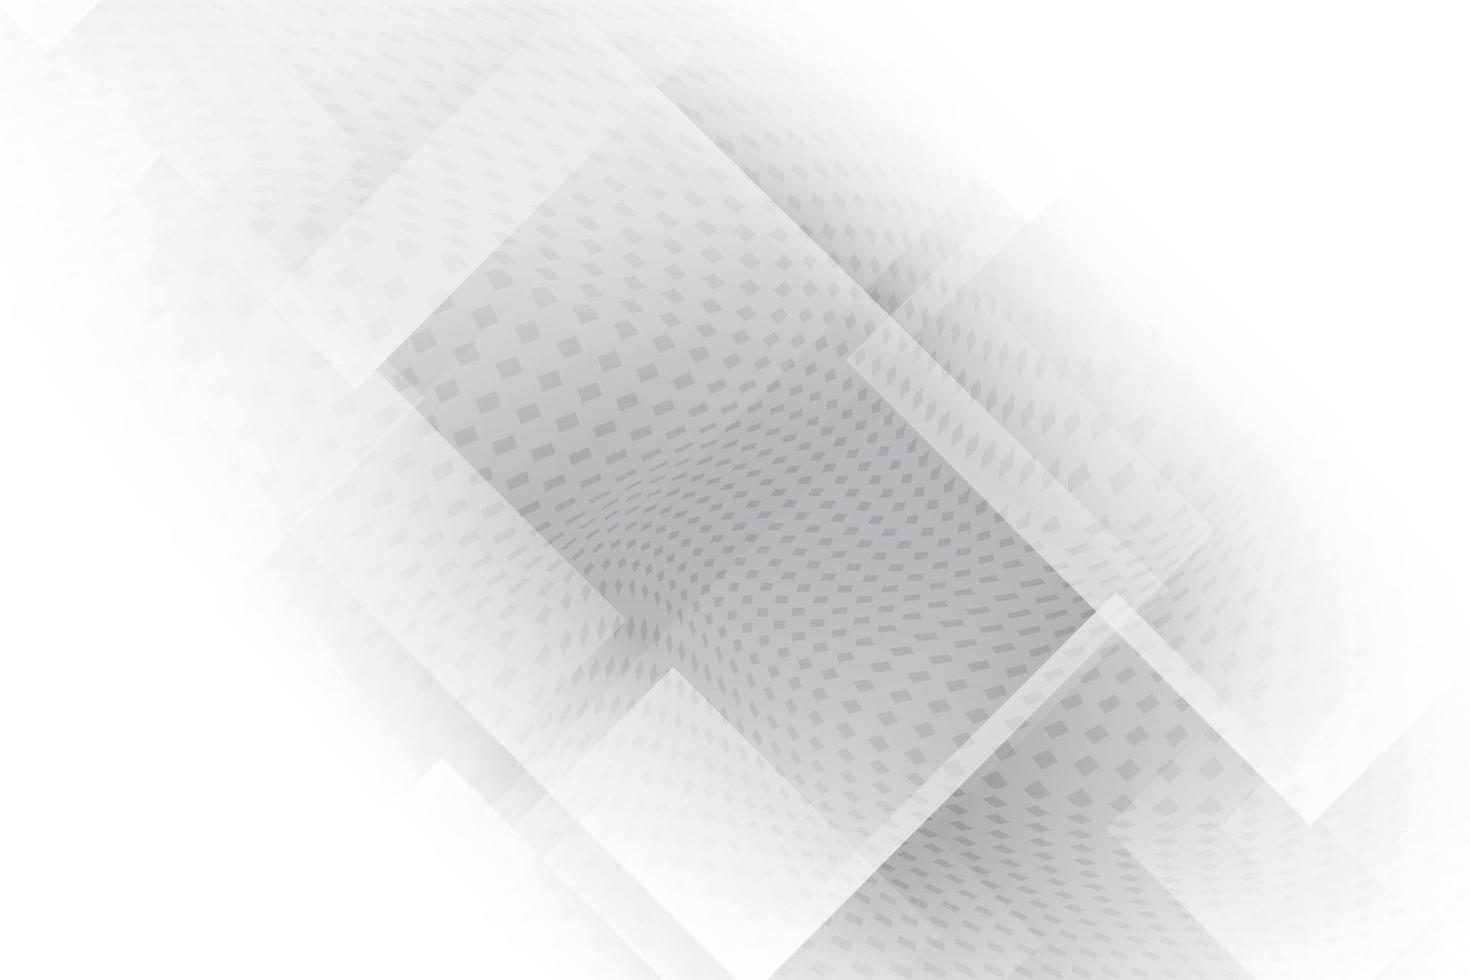 color blanco y gris abstracto, fondo de diseño moderno con forma geométrica. ilustración vectorial. vector